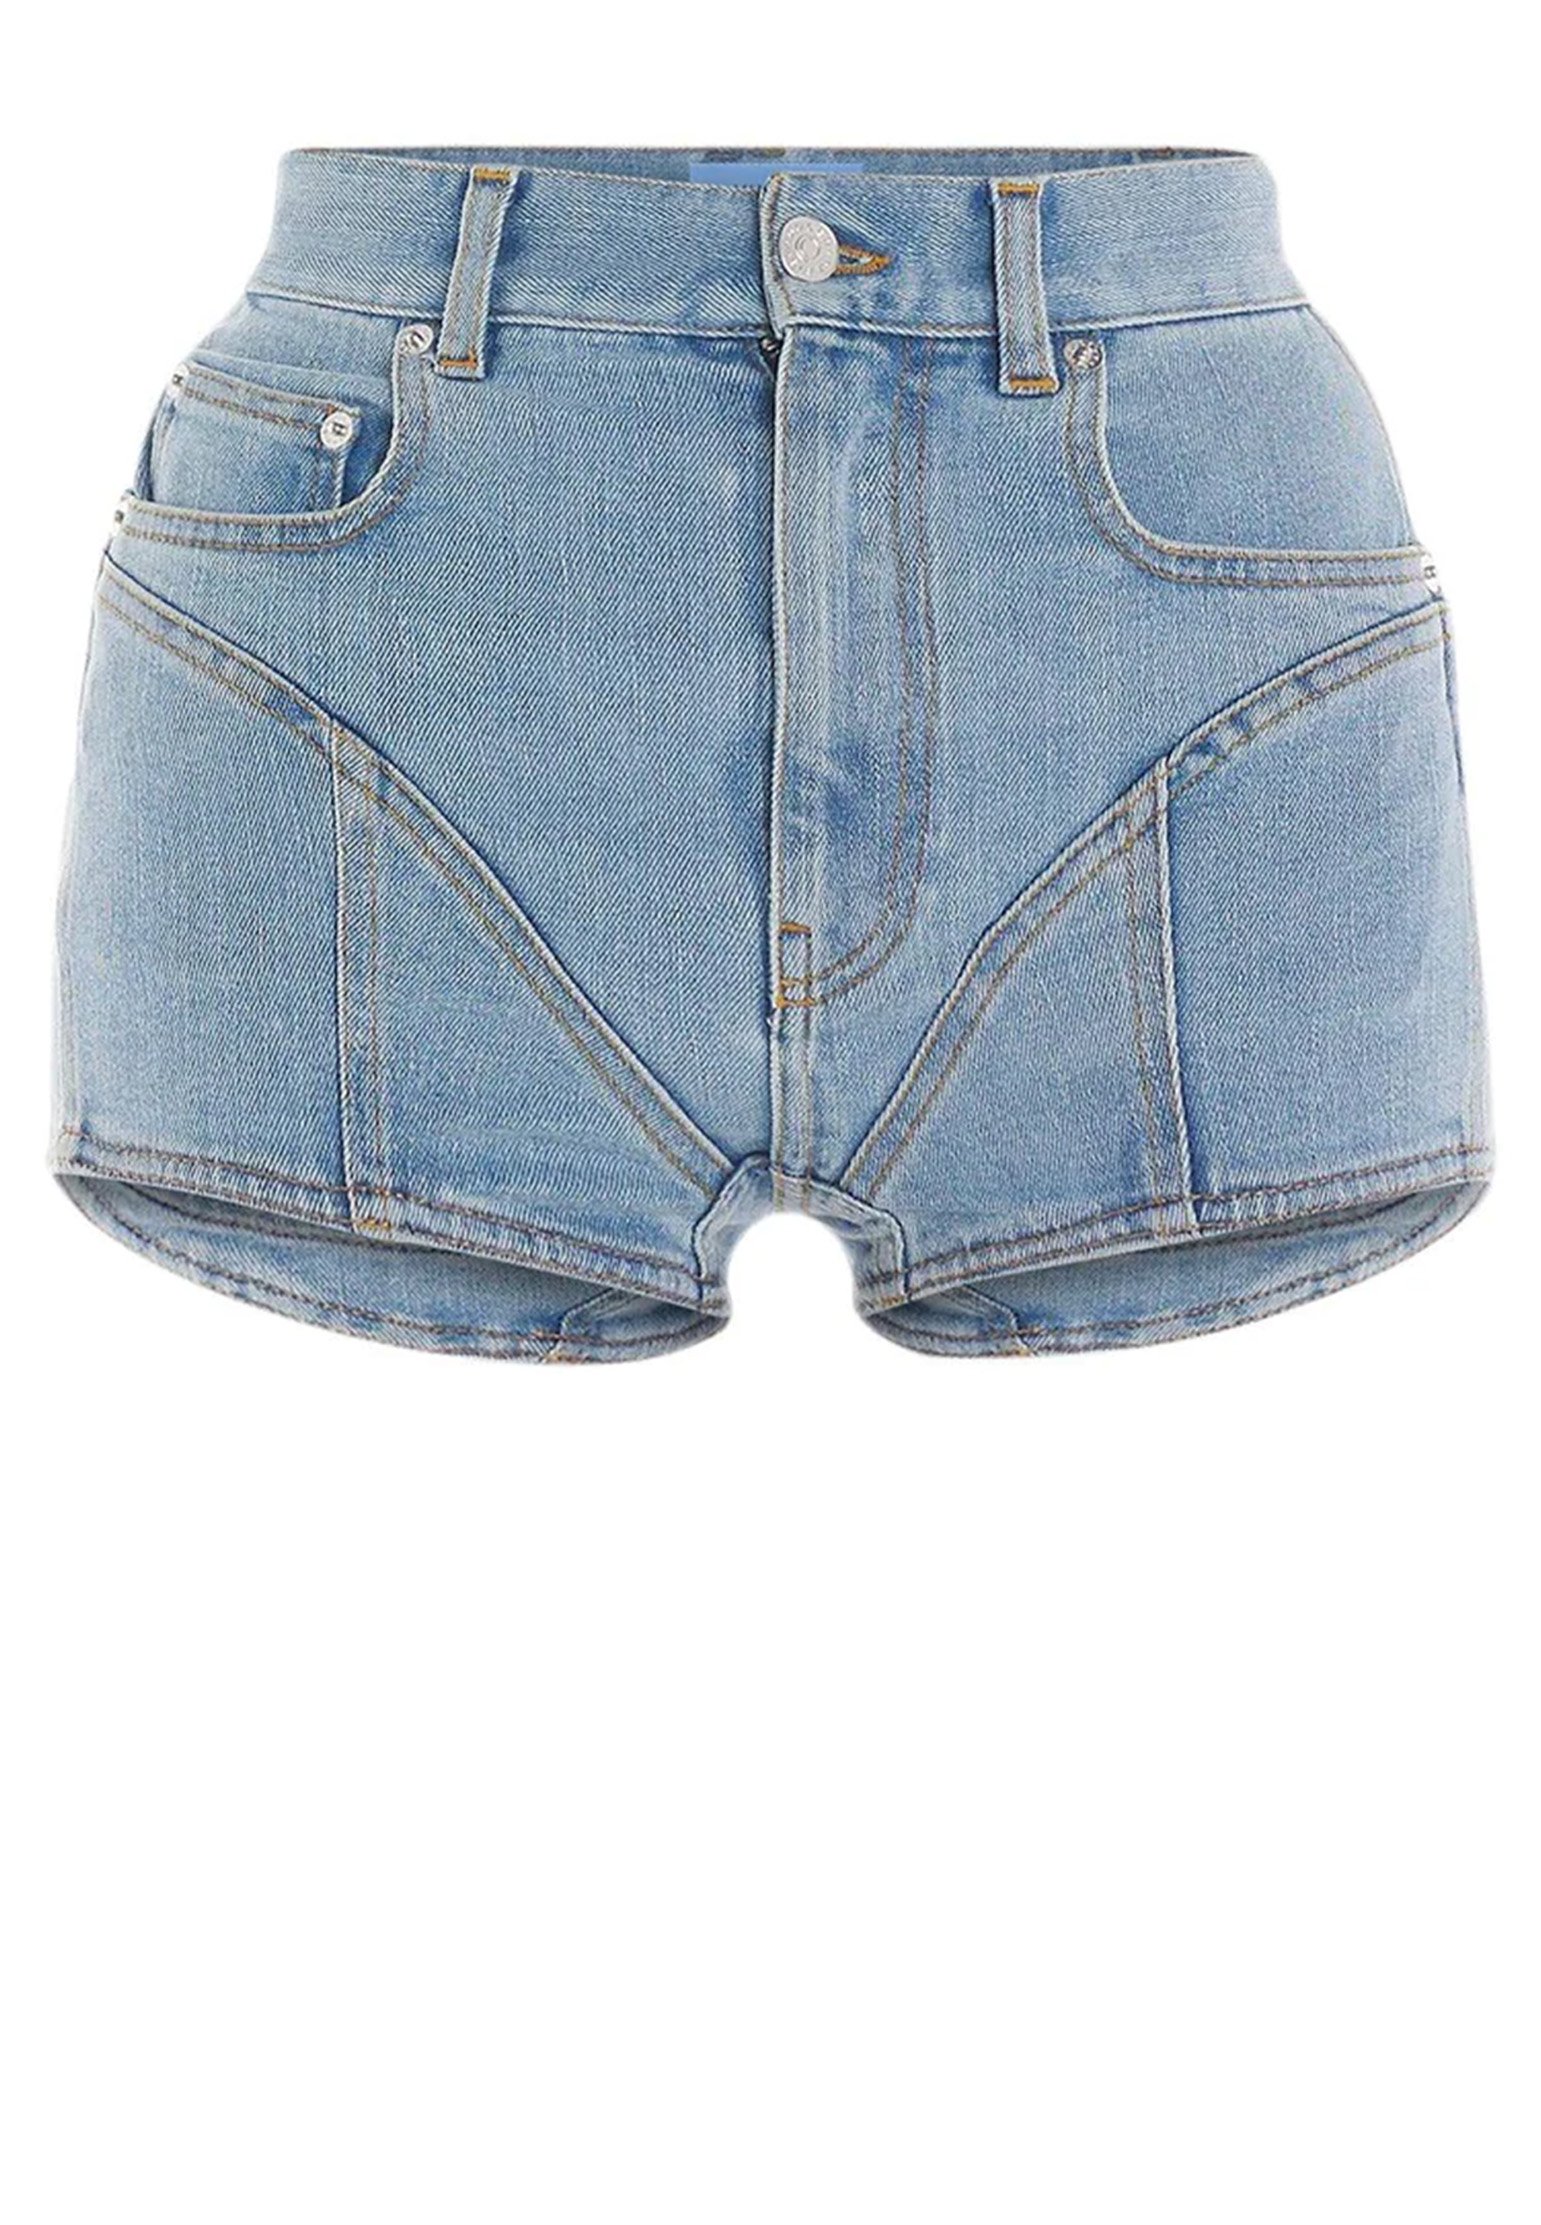 Shorts MUGLER Color: light blue (Code: 4038) in online store Allure